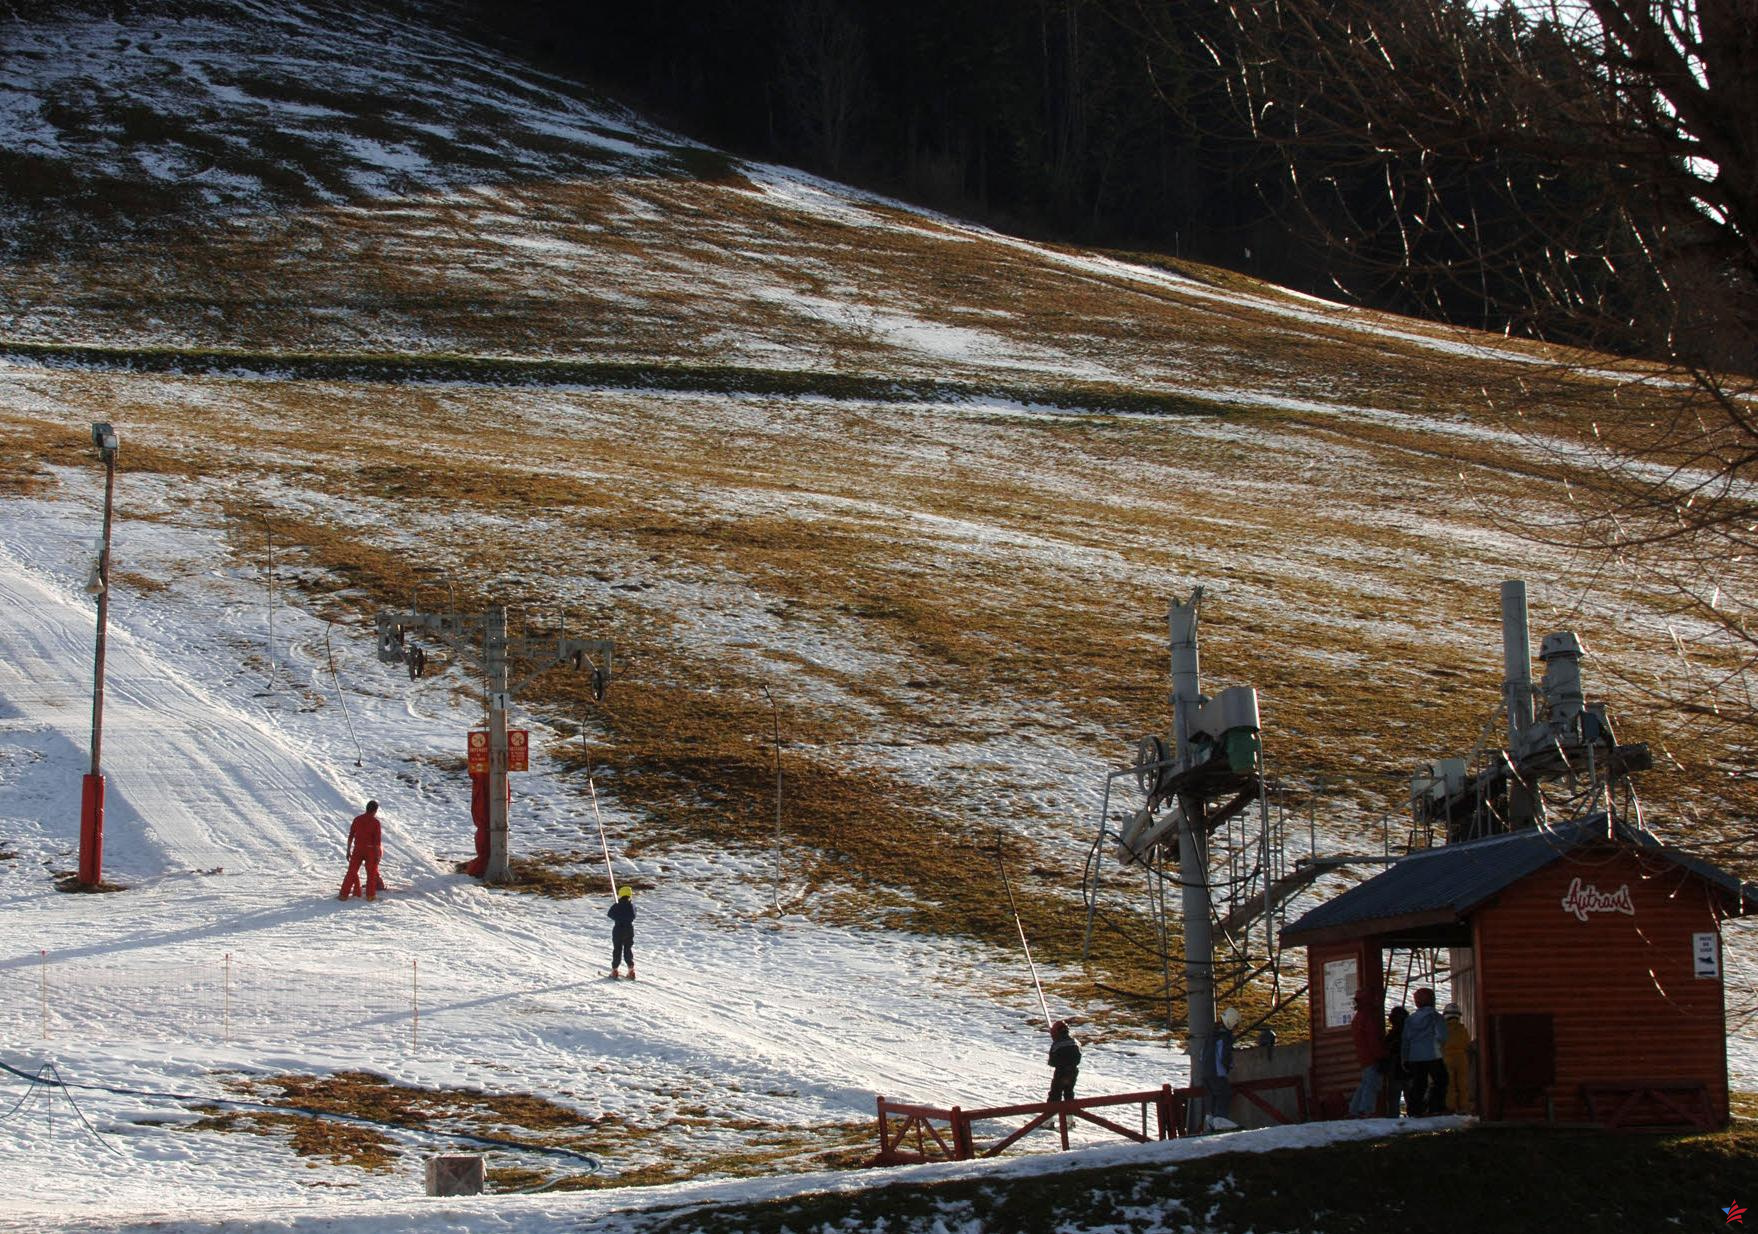 Cerca de Niza, una pequeña estación de esquí elimina “les neiges” de su nombre por el cambio climático